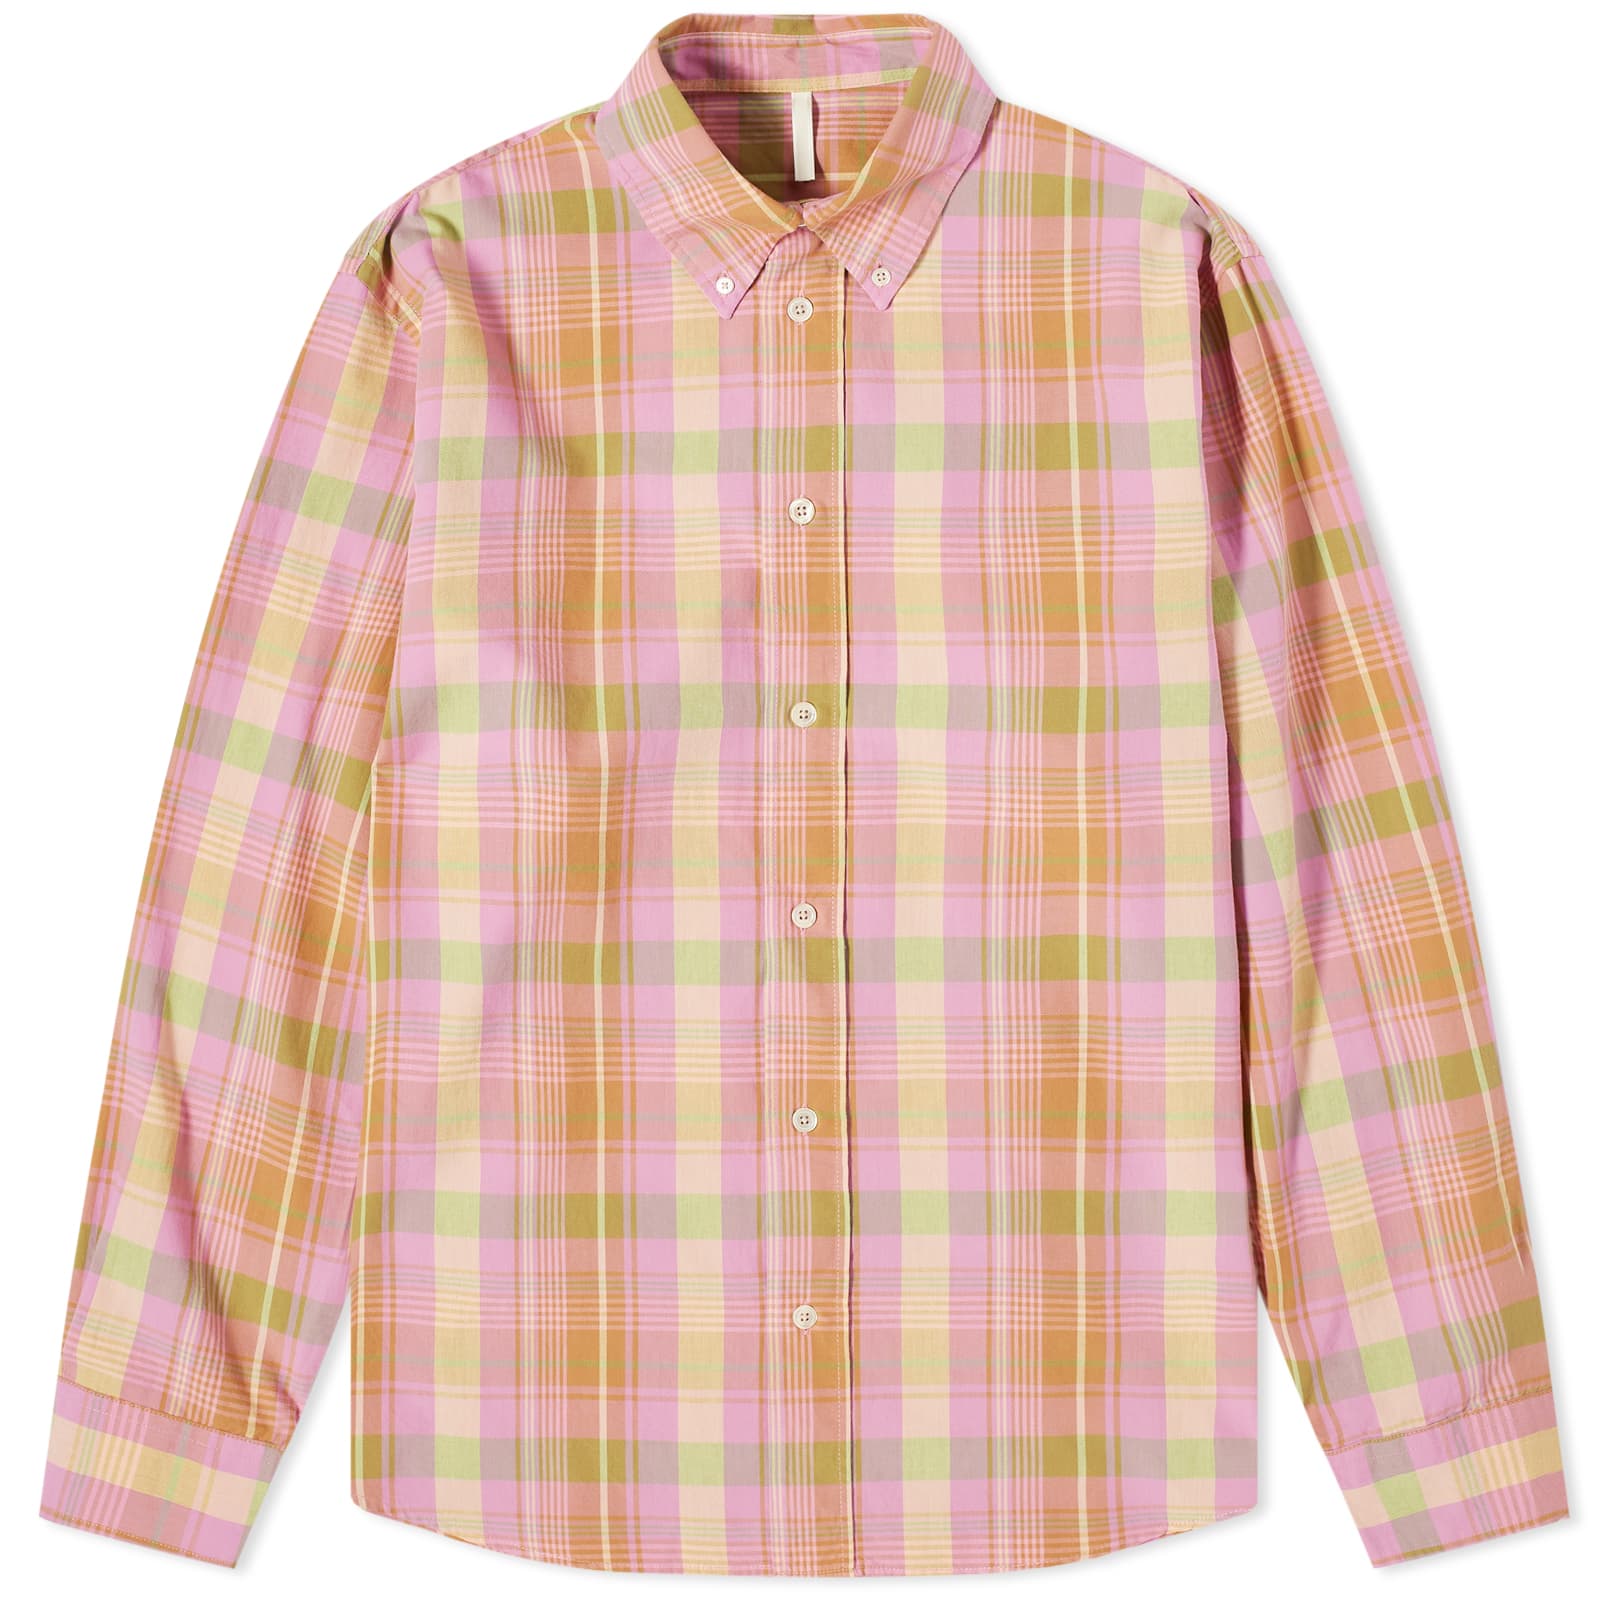 Рубашка Sunflower Poplin Check Long Sleeve, цвет Pink Check женская атласная шифоновая рубашка розовая рубашка с длинным рукавом весна 2021 новинка модная благородная рубашка с ощущением дизайна в